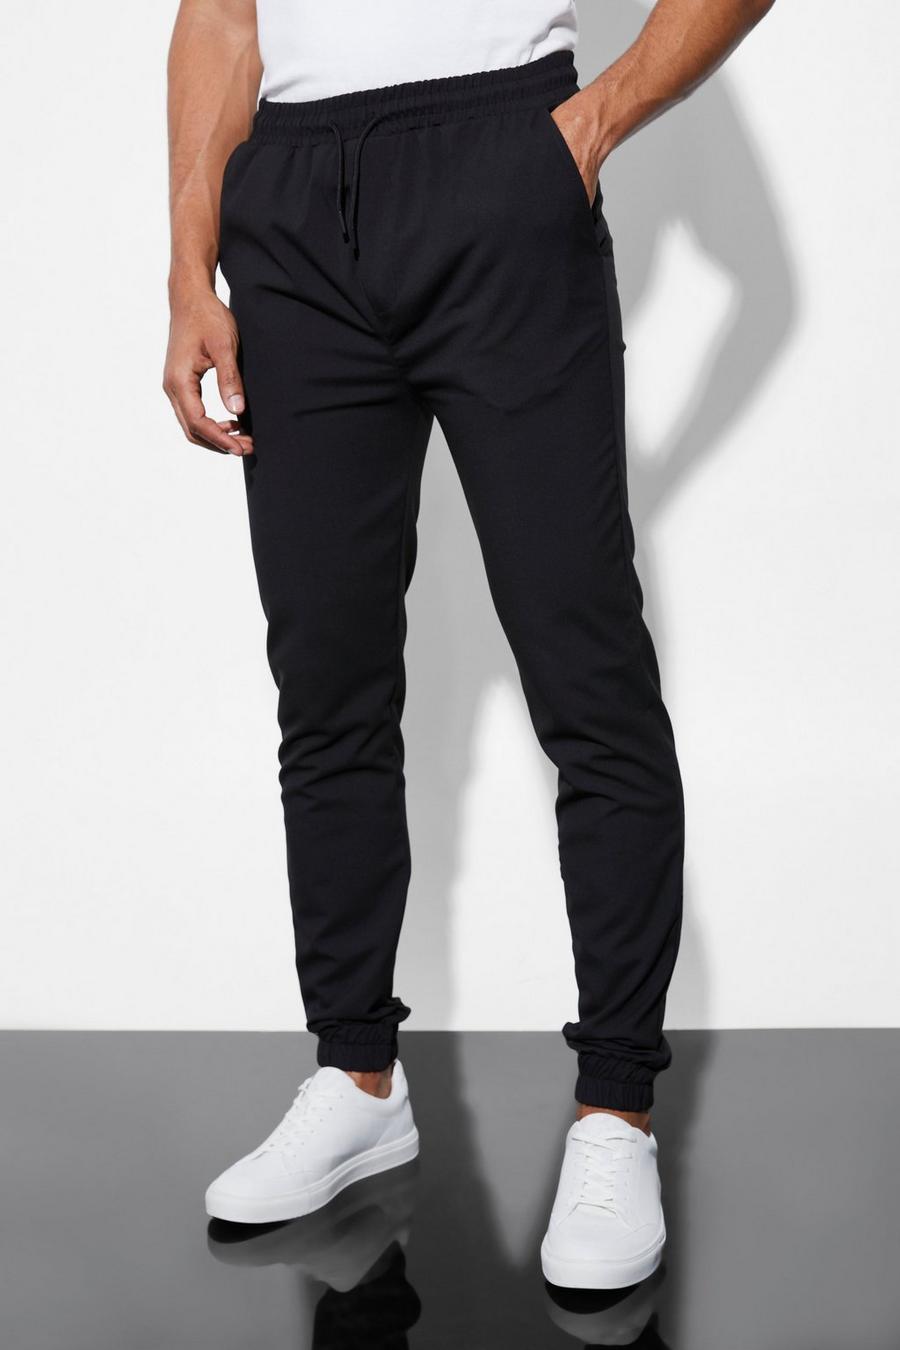 Pantaloni Slim Fit elasticizzati con polsini alle caviglie, Black negro